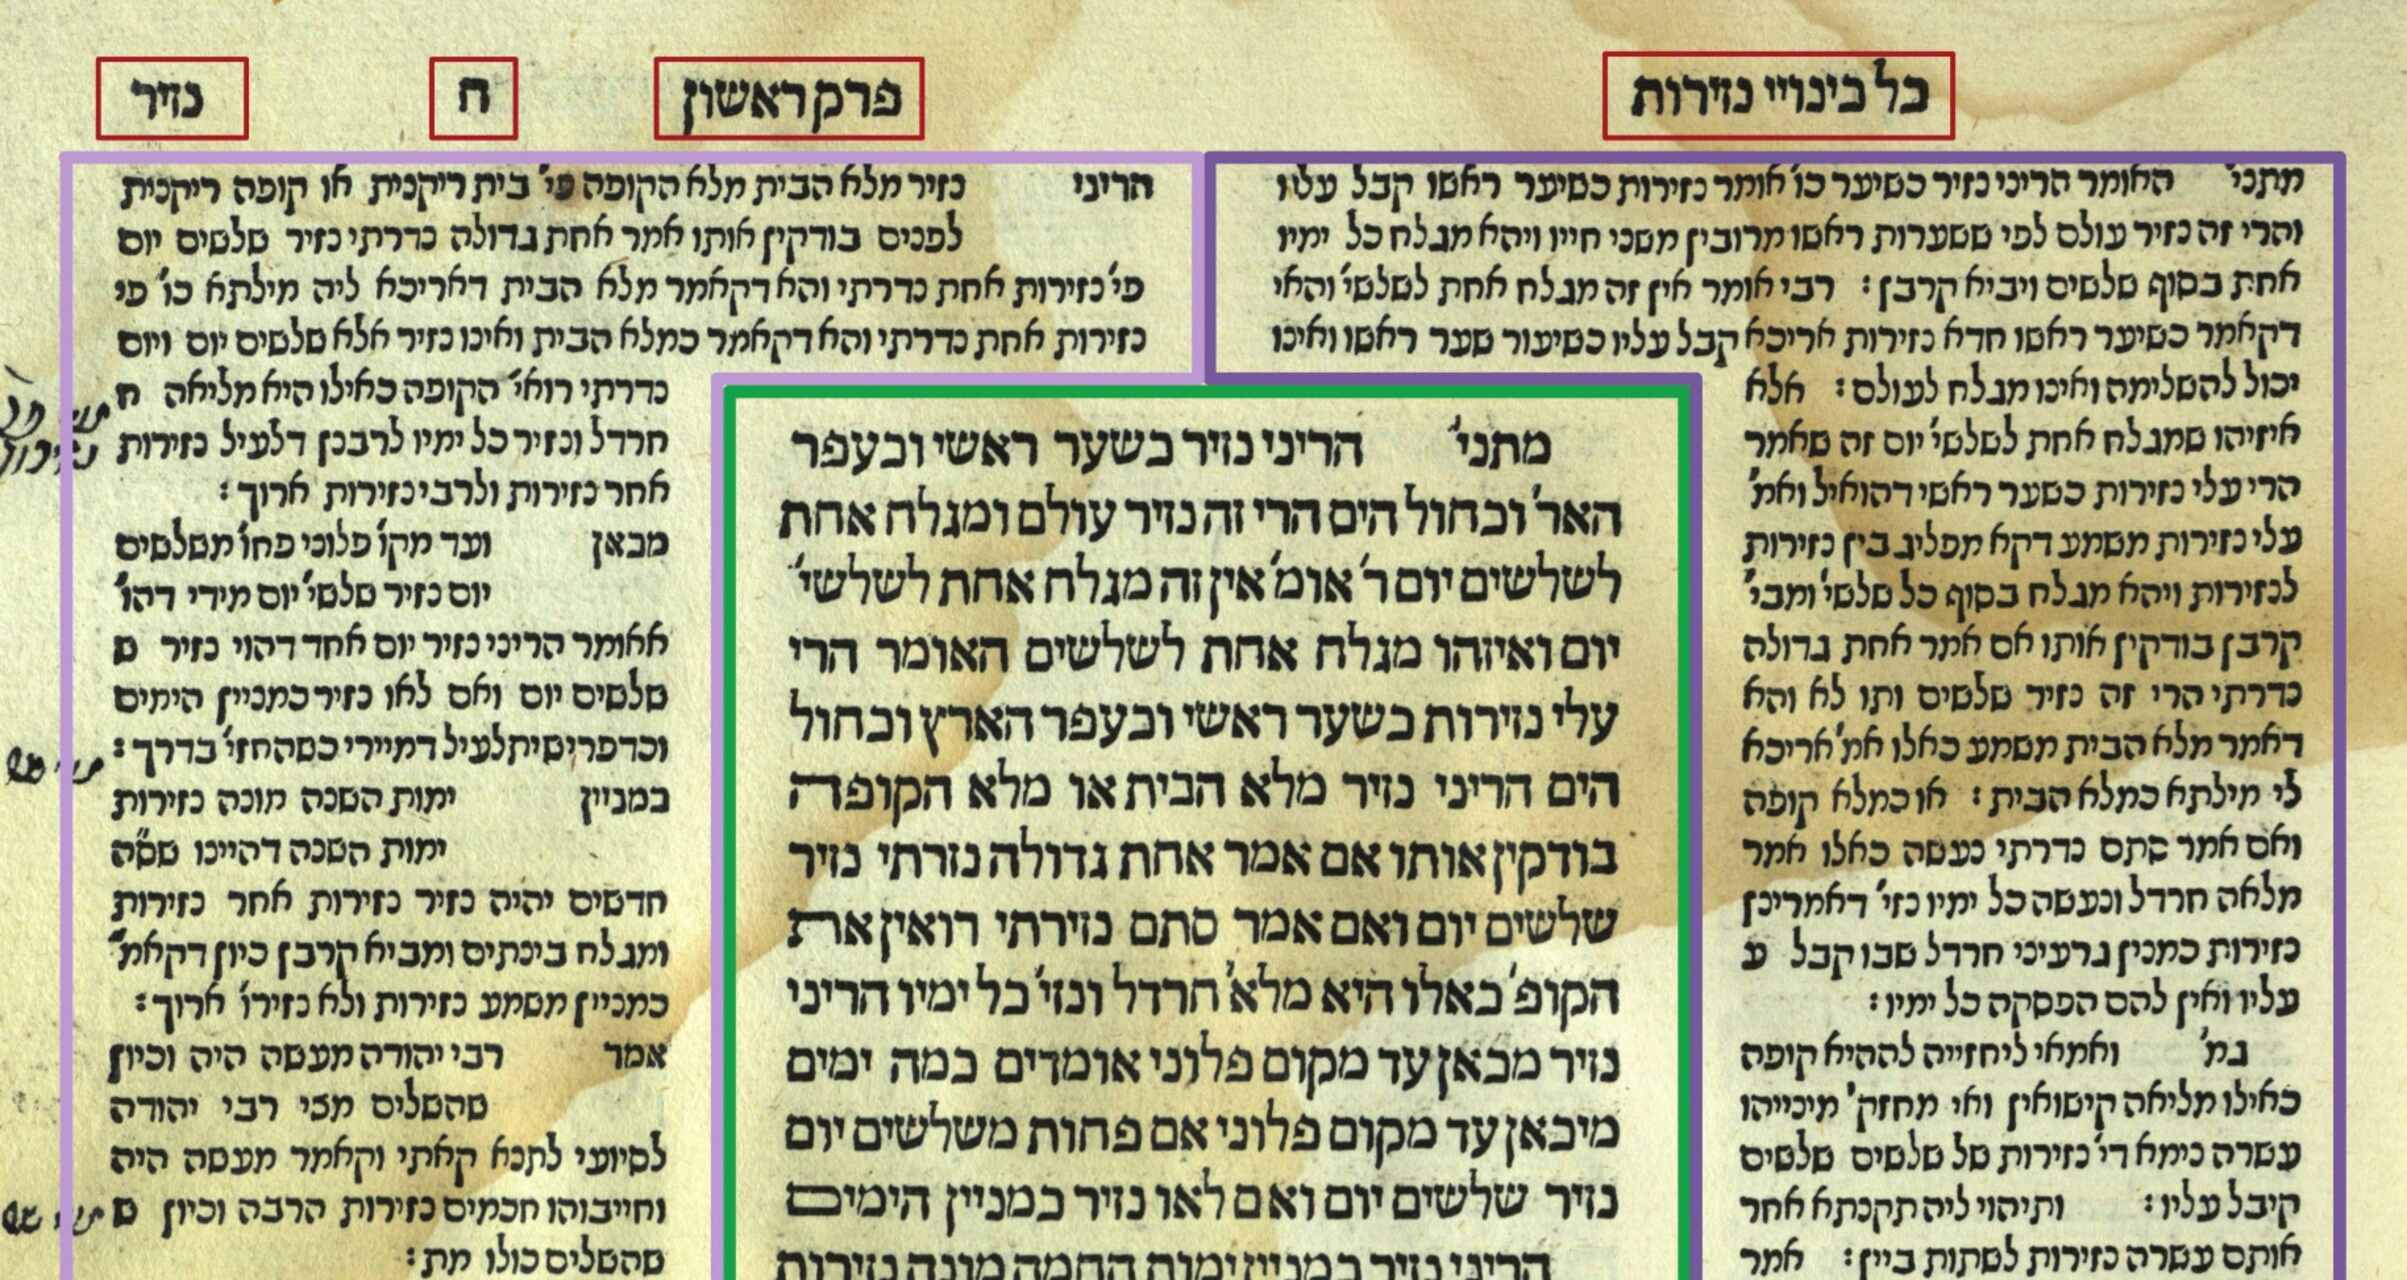 圖片來自《猶太塔木德》，頁邊空白處有註釋